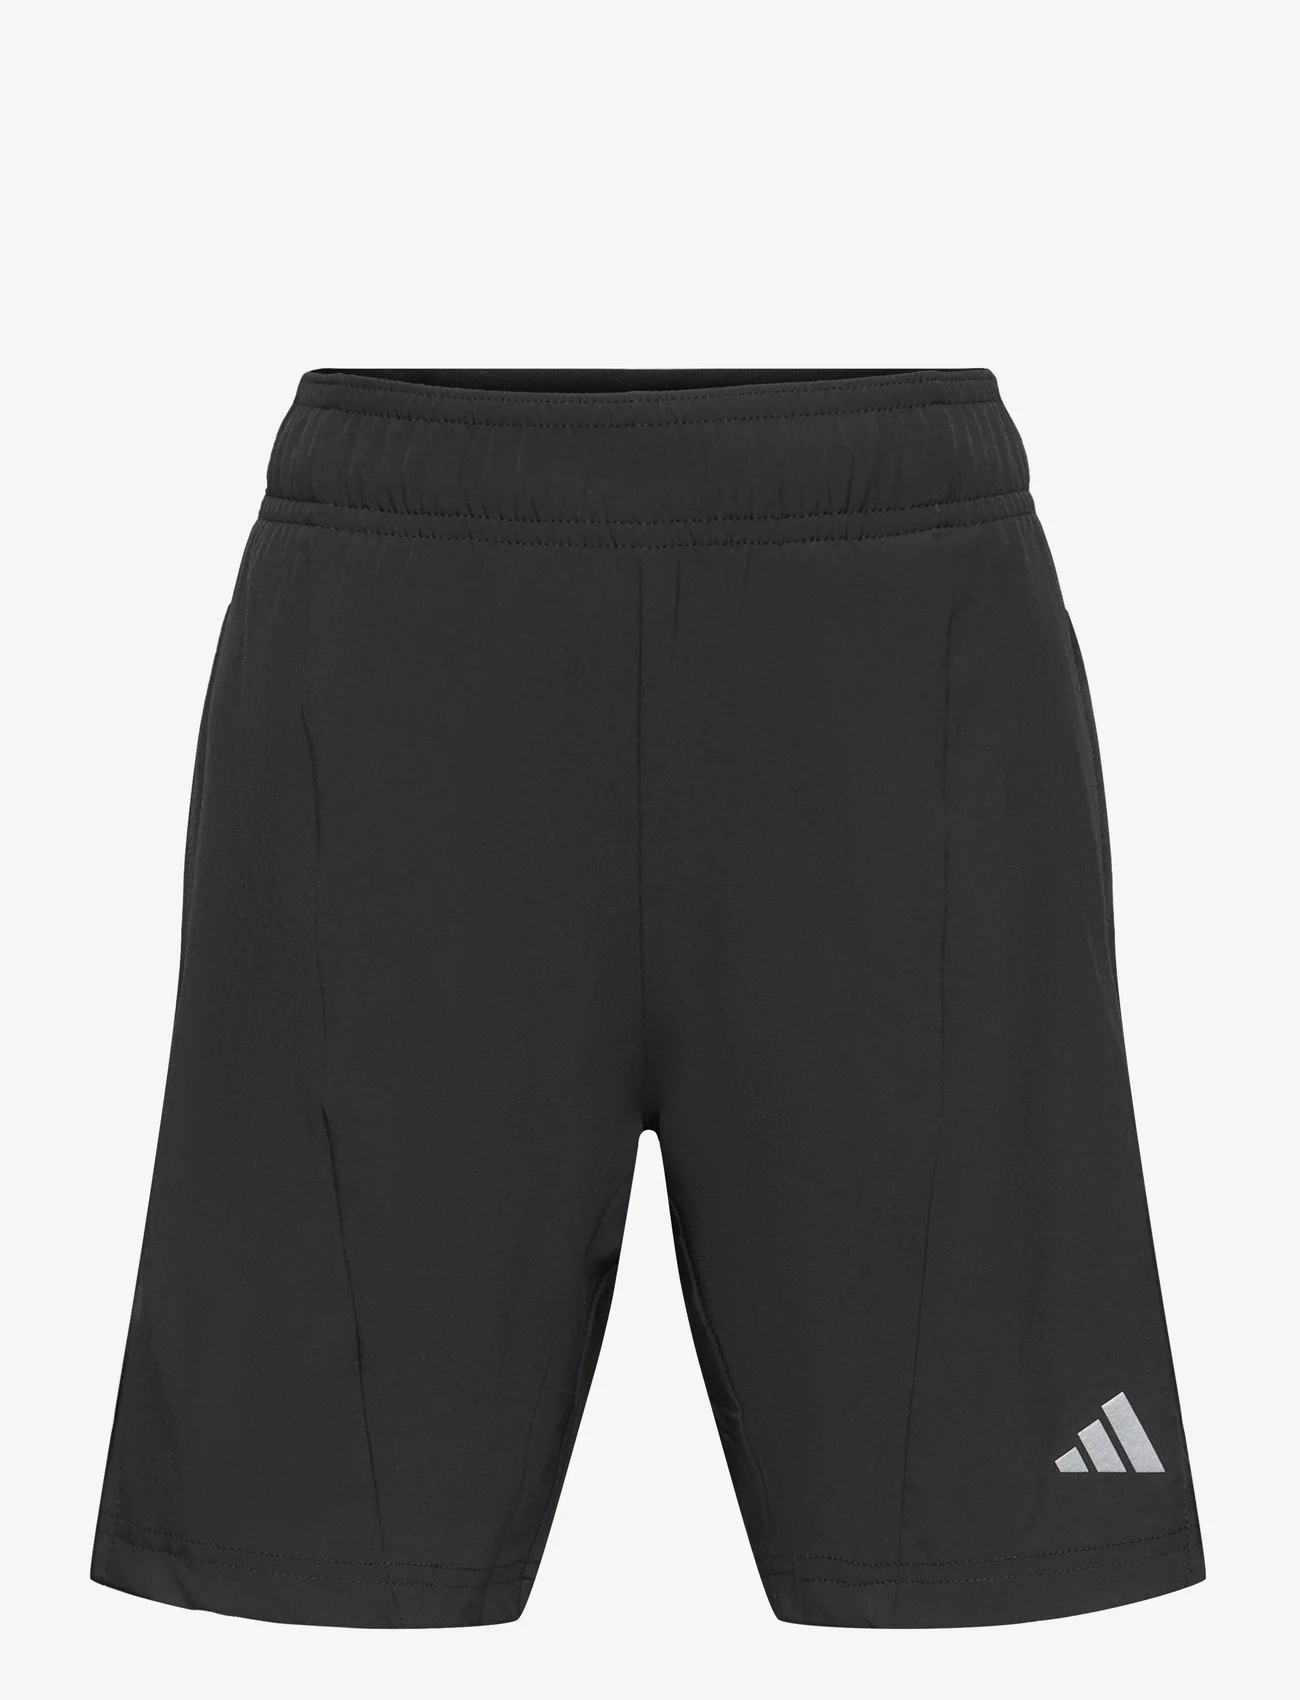 adidas Sportswear - J D4T SHORTS - sport shorts - black/refsil - 0